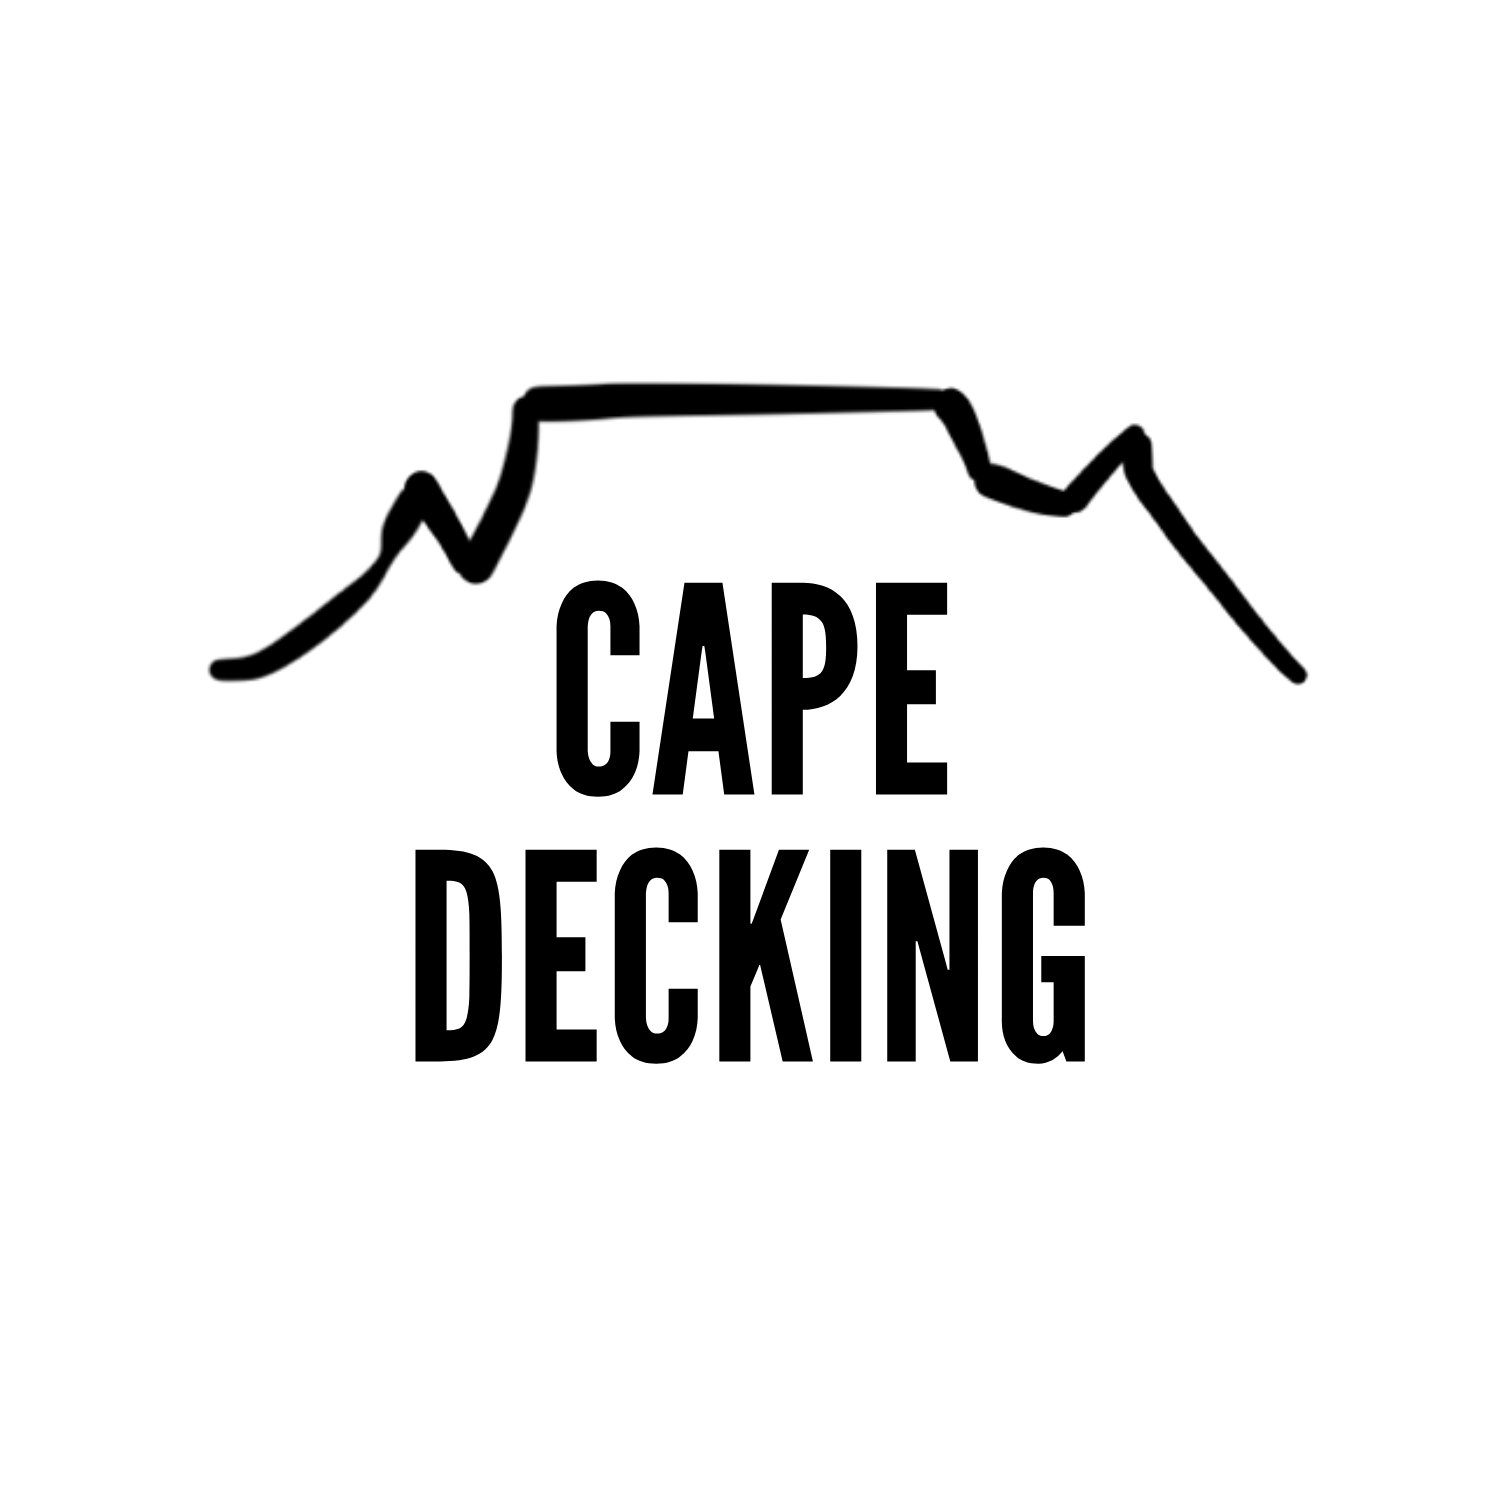 Cape-Decking-Logo-Black-Writing-On-White-Circle